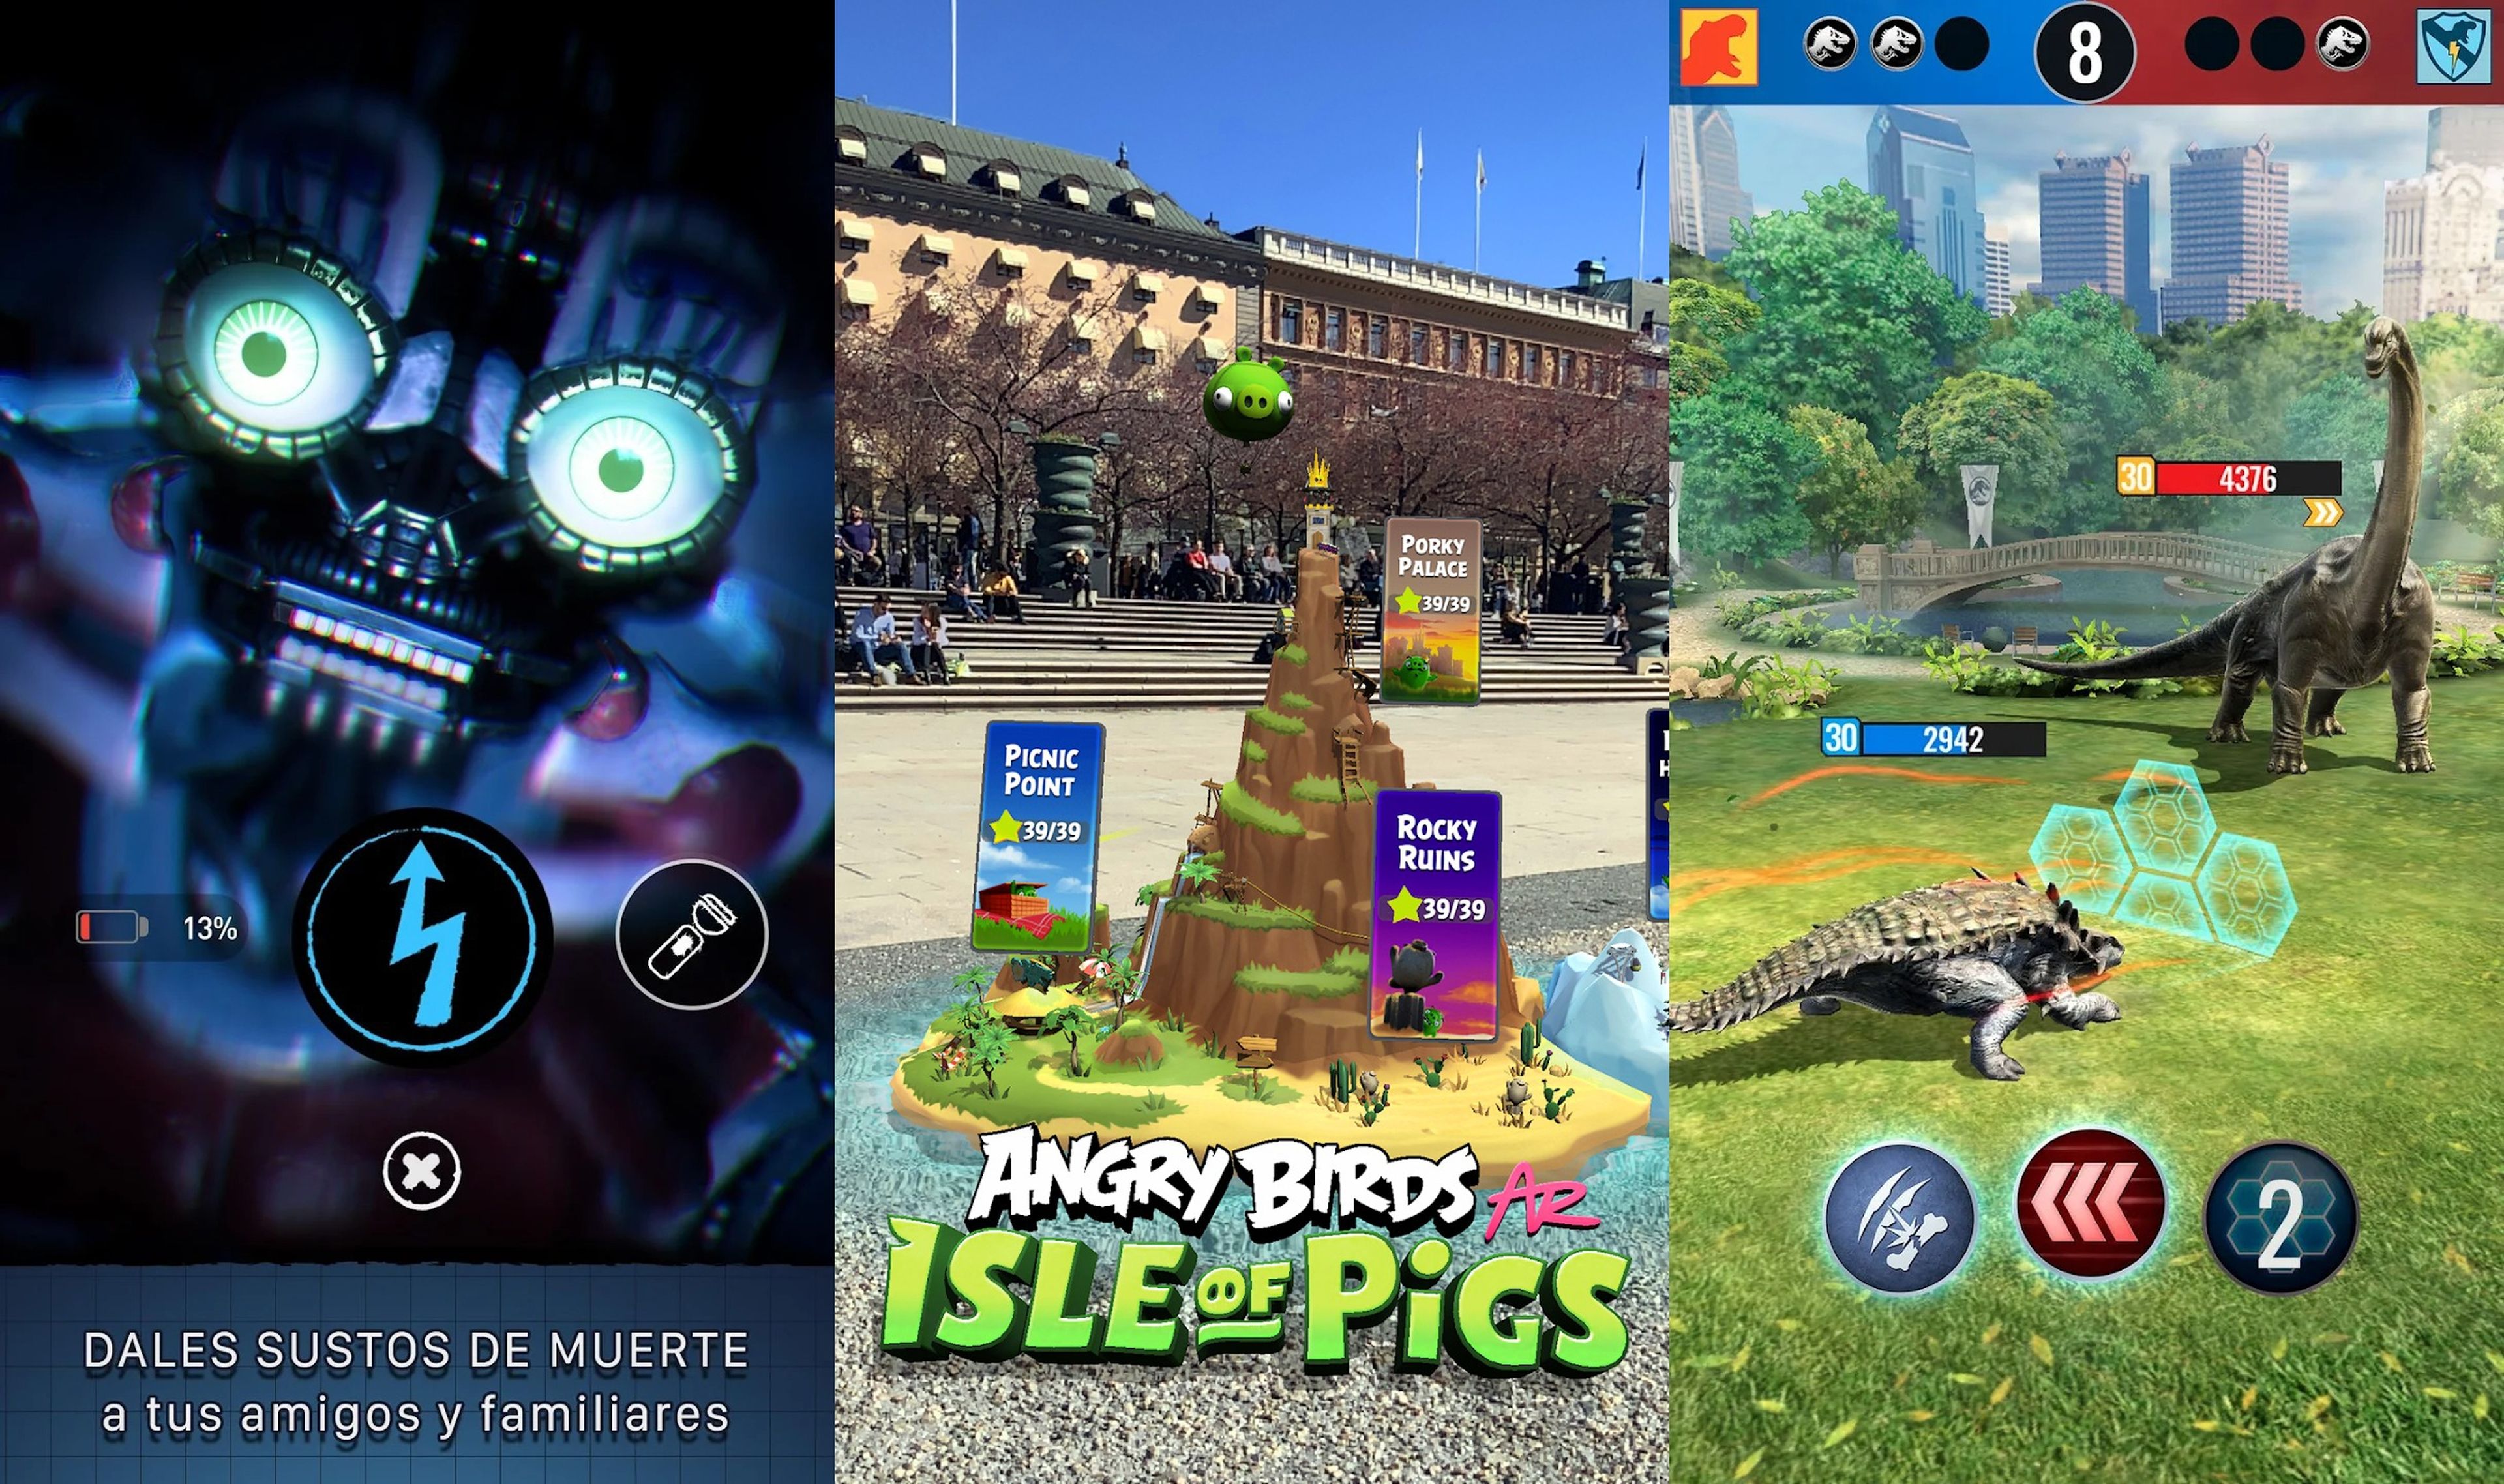 Los 7 mejores juegos de realidad aumentada y alternativa para iPhone y Android